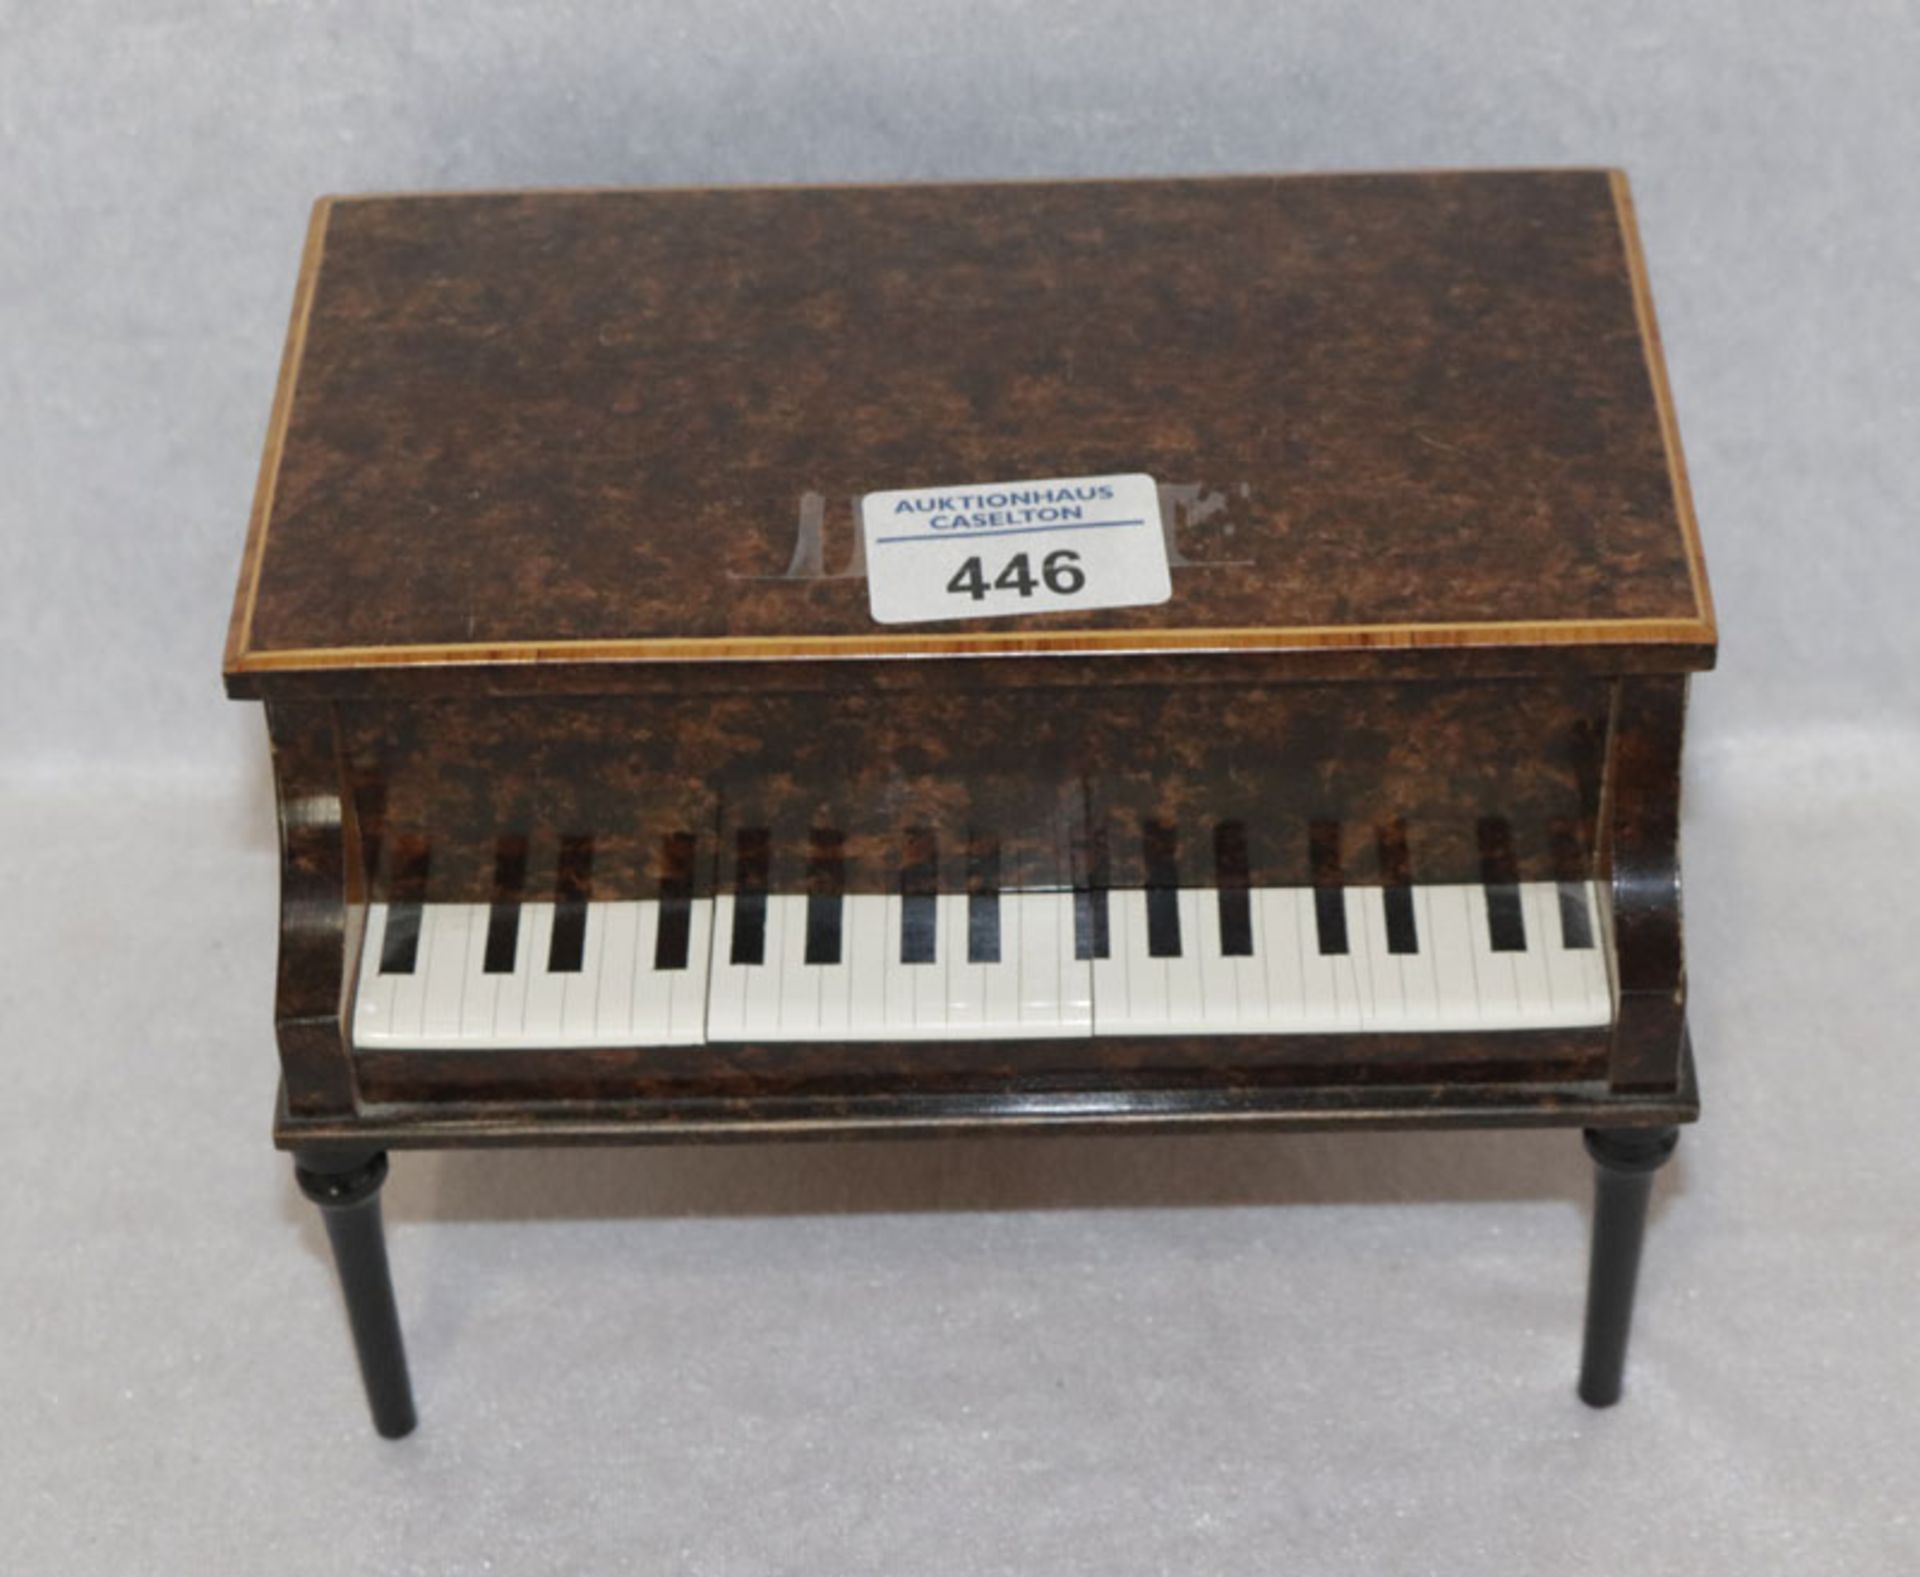 Holz Schmuckdose in Form eines Klaviers mit Spieluhr, Walzermelodien, H 13 cm, B 19 cm, T 13 cm, lei